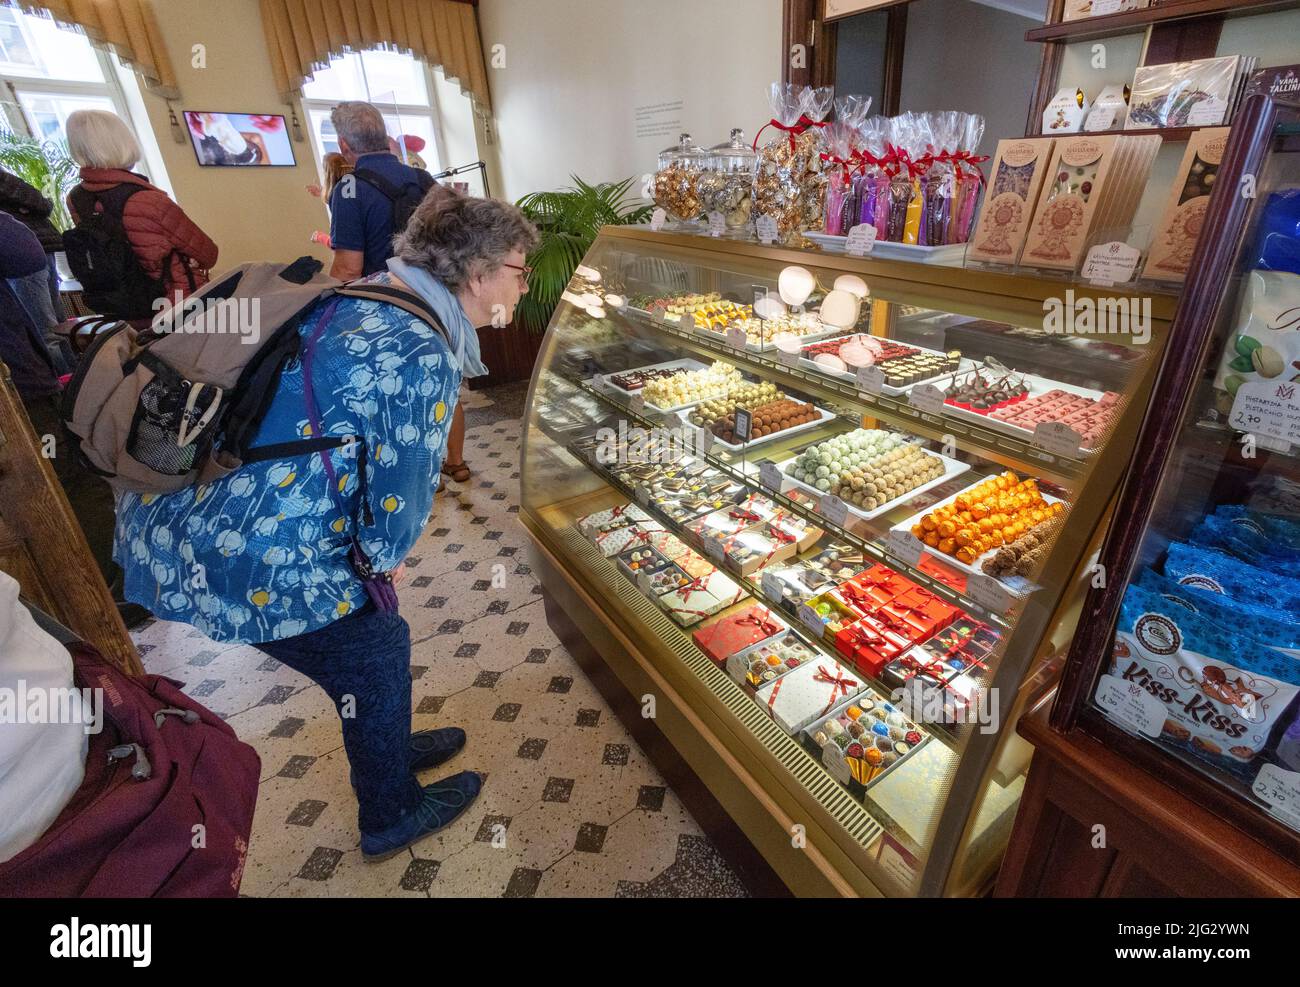 Estonie touriste; une femme qui fait du shopping pour des bonbons, des chocolats et des bonbons à la massepain, café Maiasmokk intérieur, la vieille ville de Tallinn, Tallinn Estonie Banque D'Images